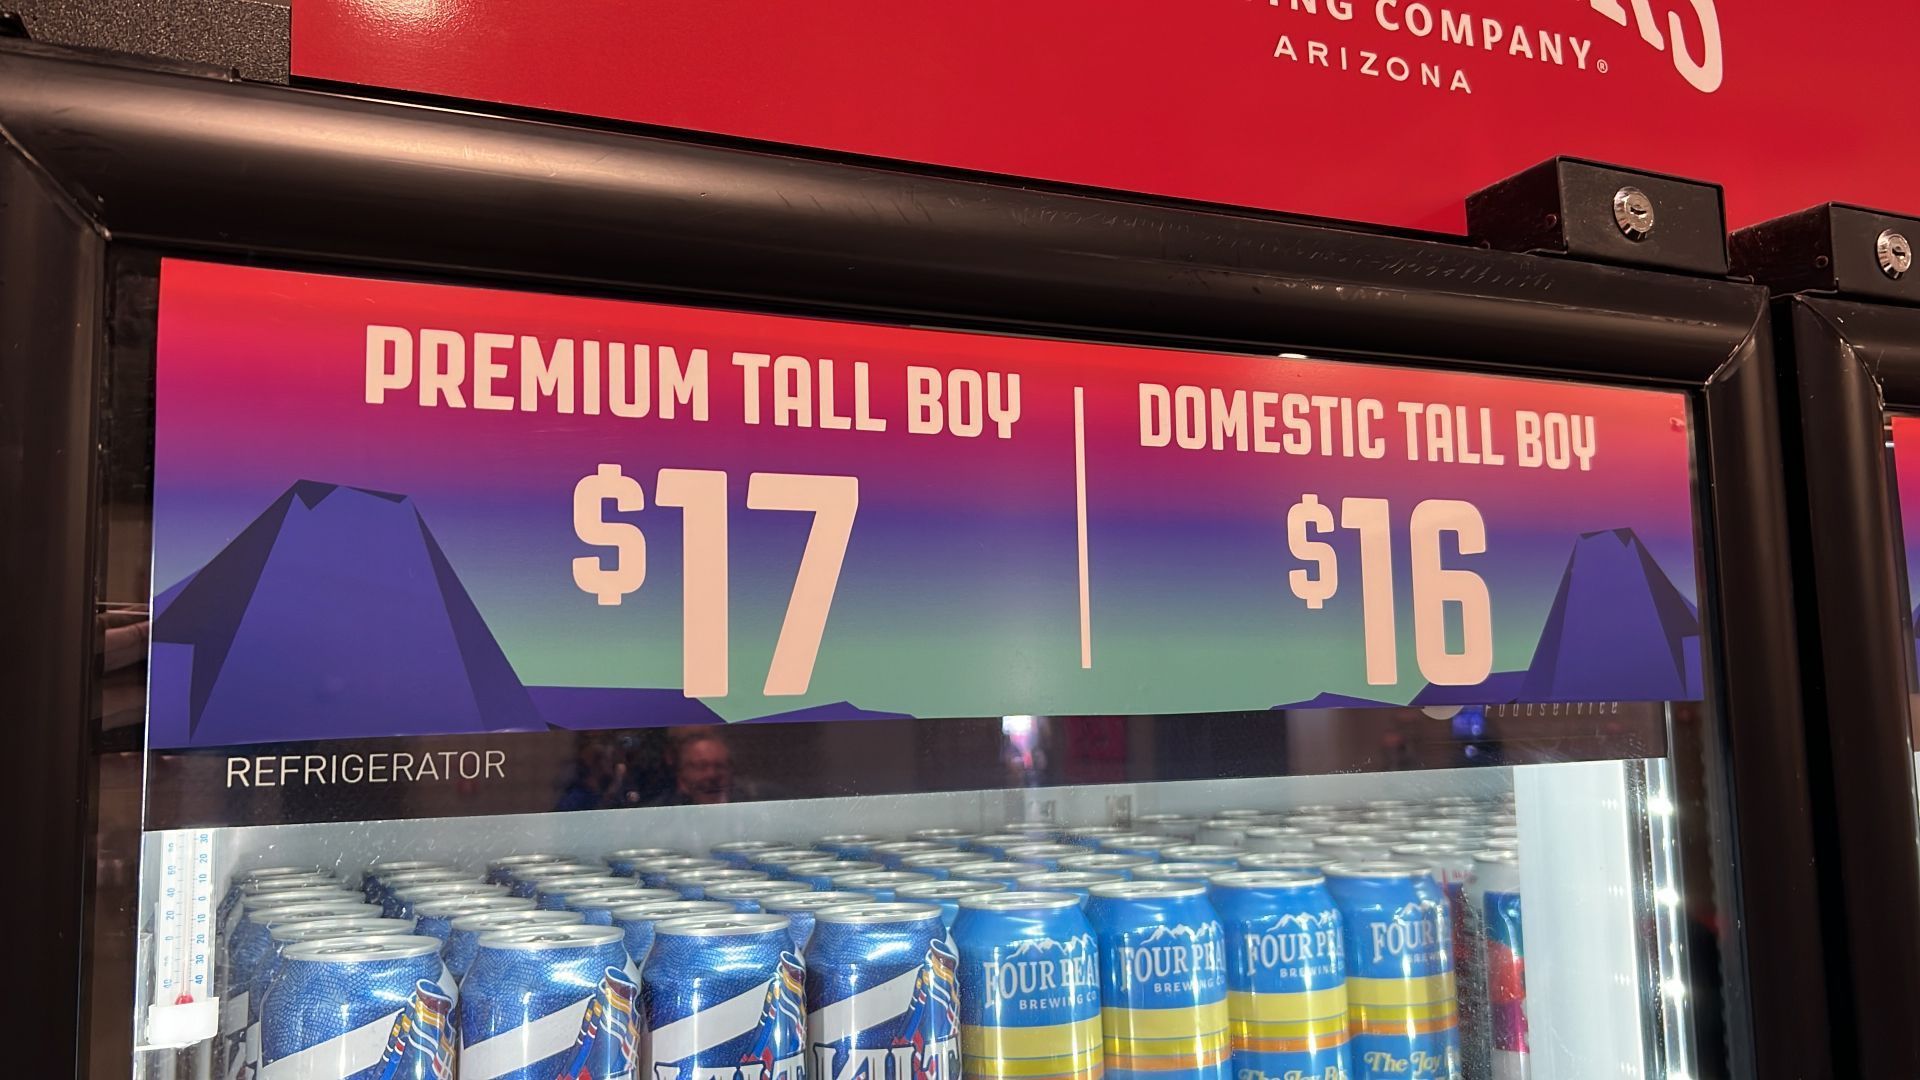 
                <strong>Das Bier für 16 Dollar</strong><br>
                Wer Durst hat, wird ebenfalls ganz schön viel Geld los. Die Dose Tall Boy Bier liegt bei 16 Dollar...
              